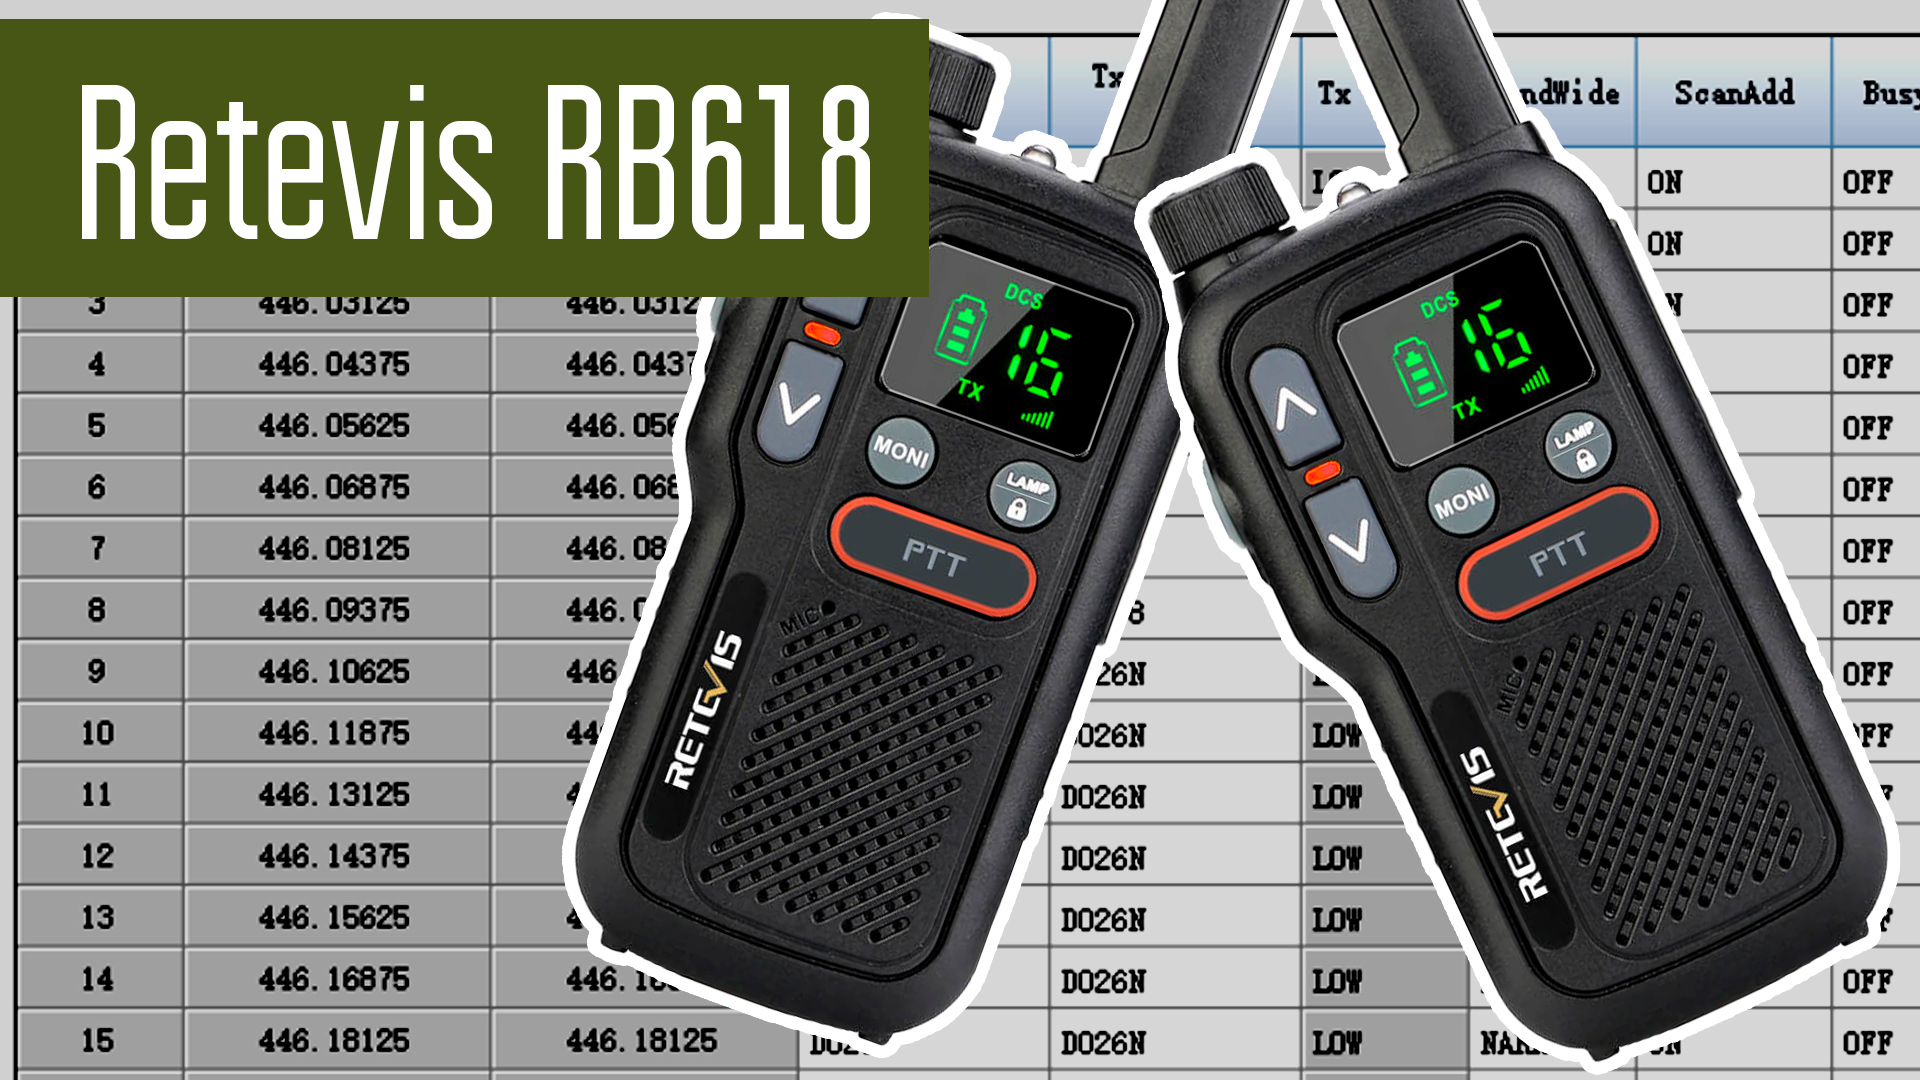 Retevis RB618 Безлицензионная PMR радиостанция программируемая с PC. Можно ли перепрограммировать?